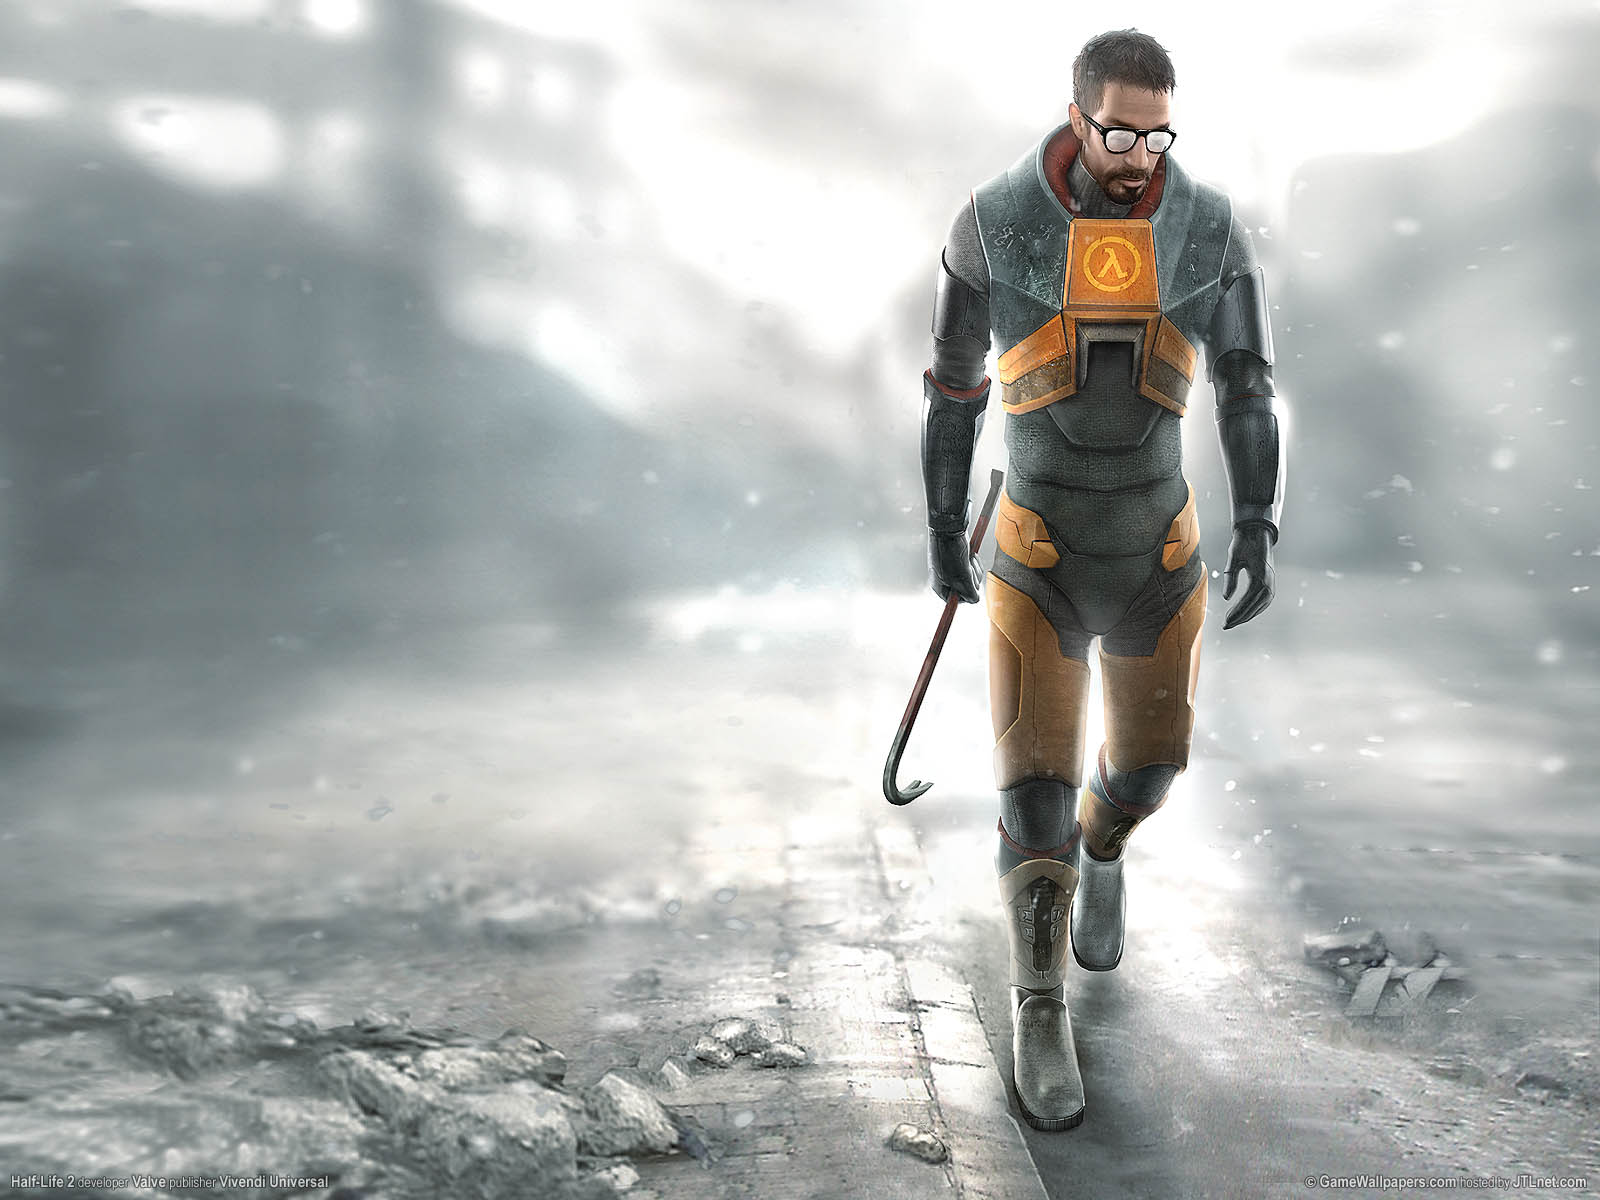 Half-Life 2 fond d'cran 01 1600x1200